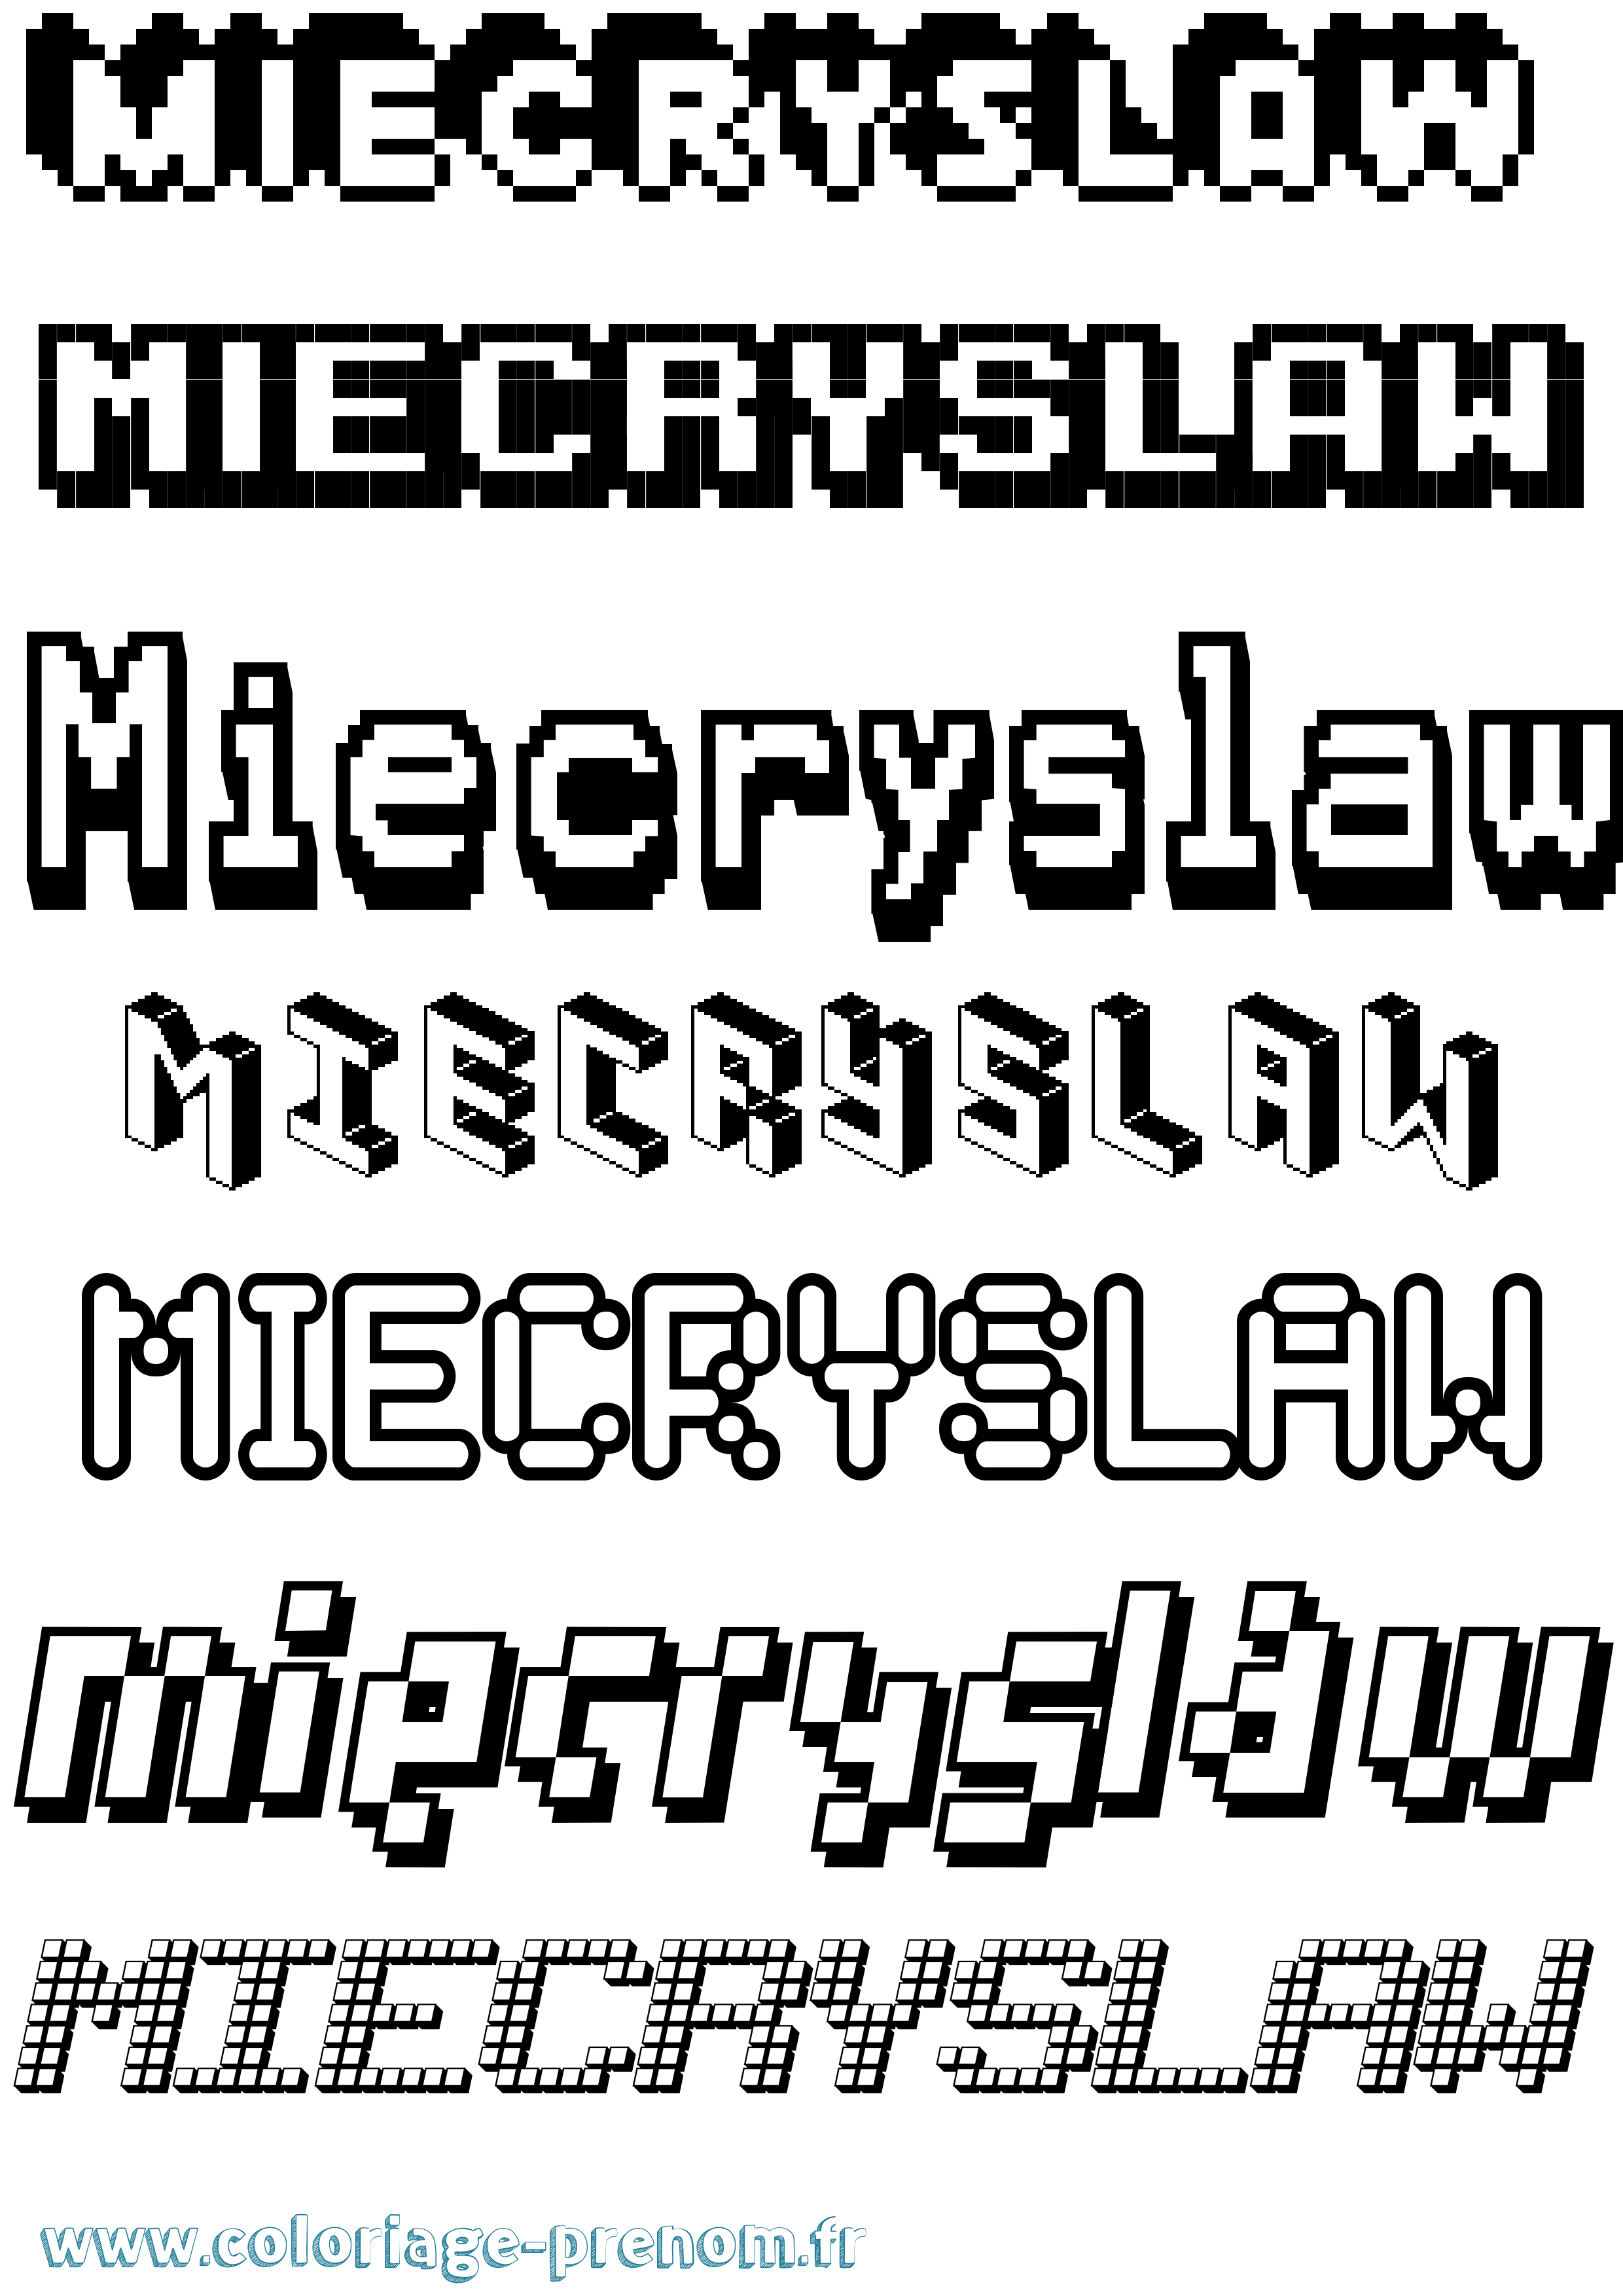 Coloriage prénom Miecryslaw Pixel